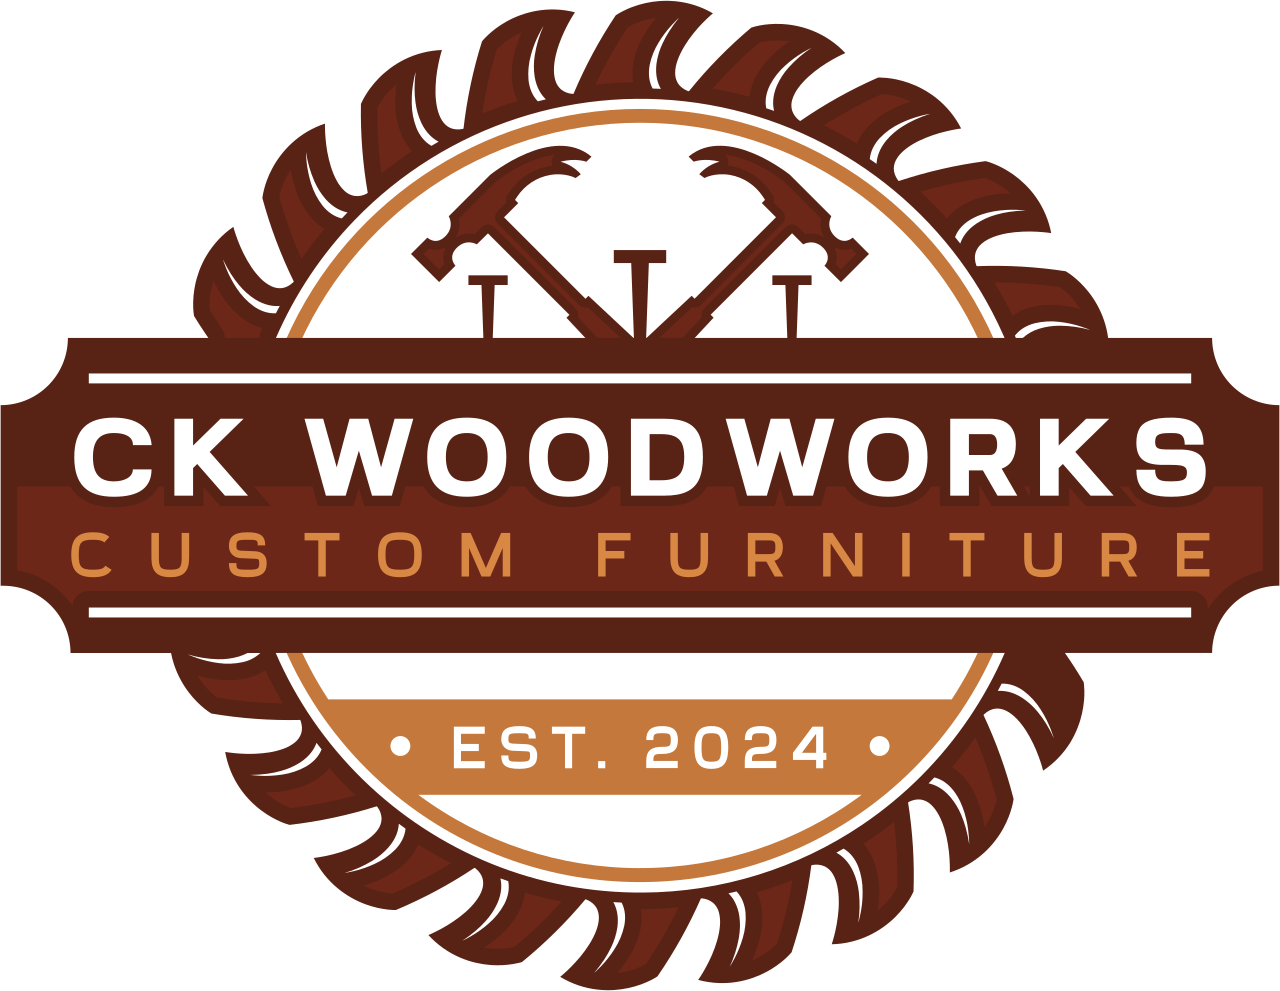 CK Woodworks's logo